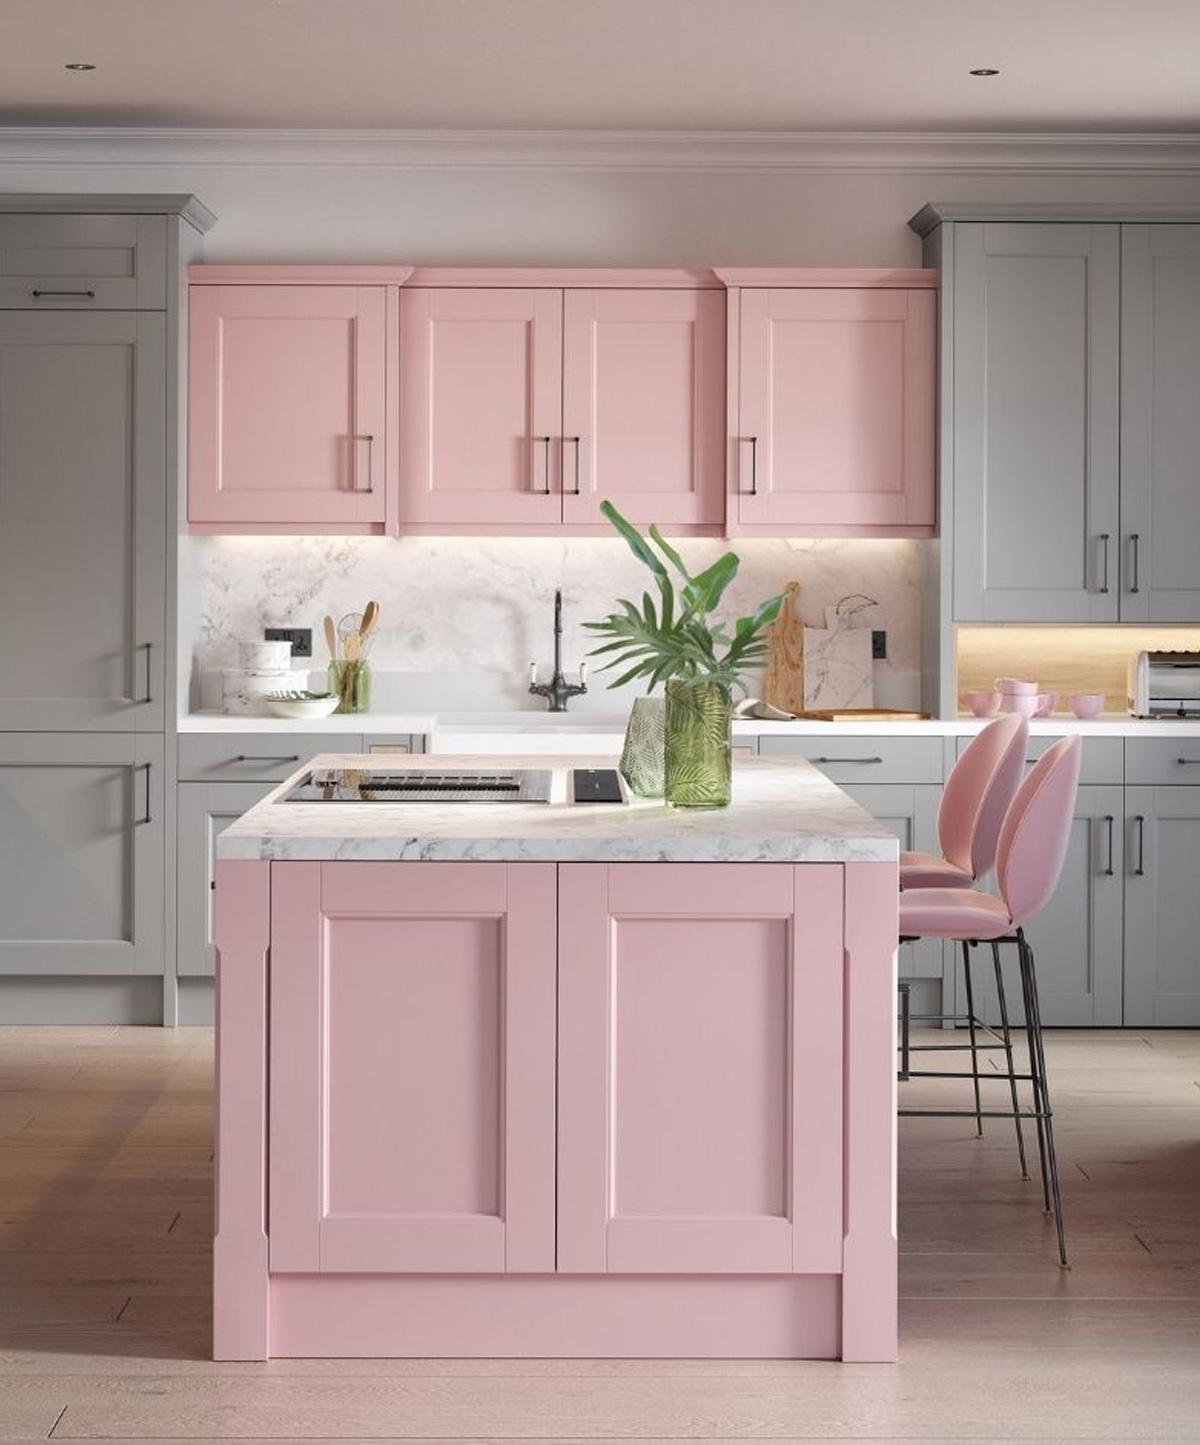 Pha trộn nhiều tông màu pastel tạo vẻ đẹp tươi mới cho nội thất phòng bếp